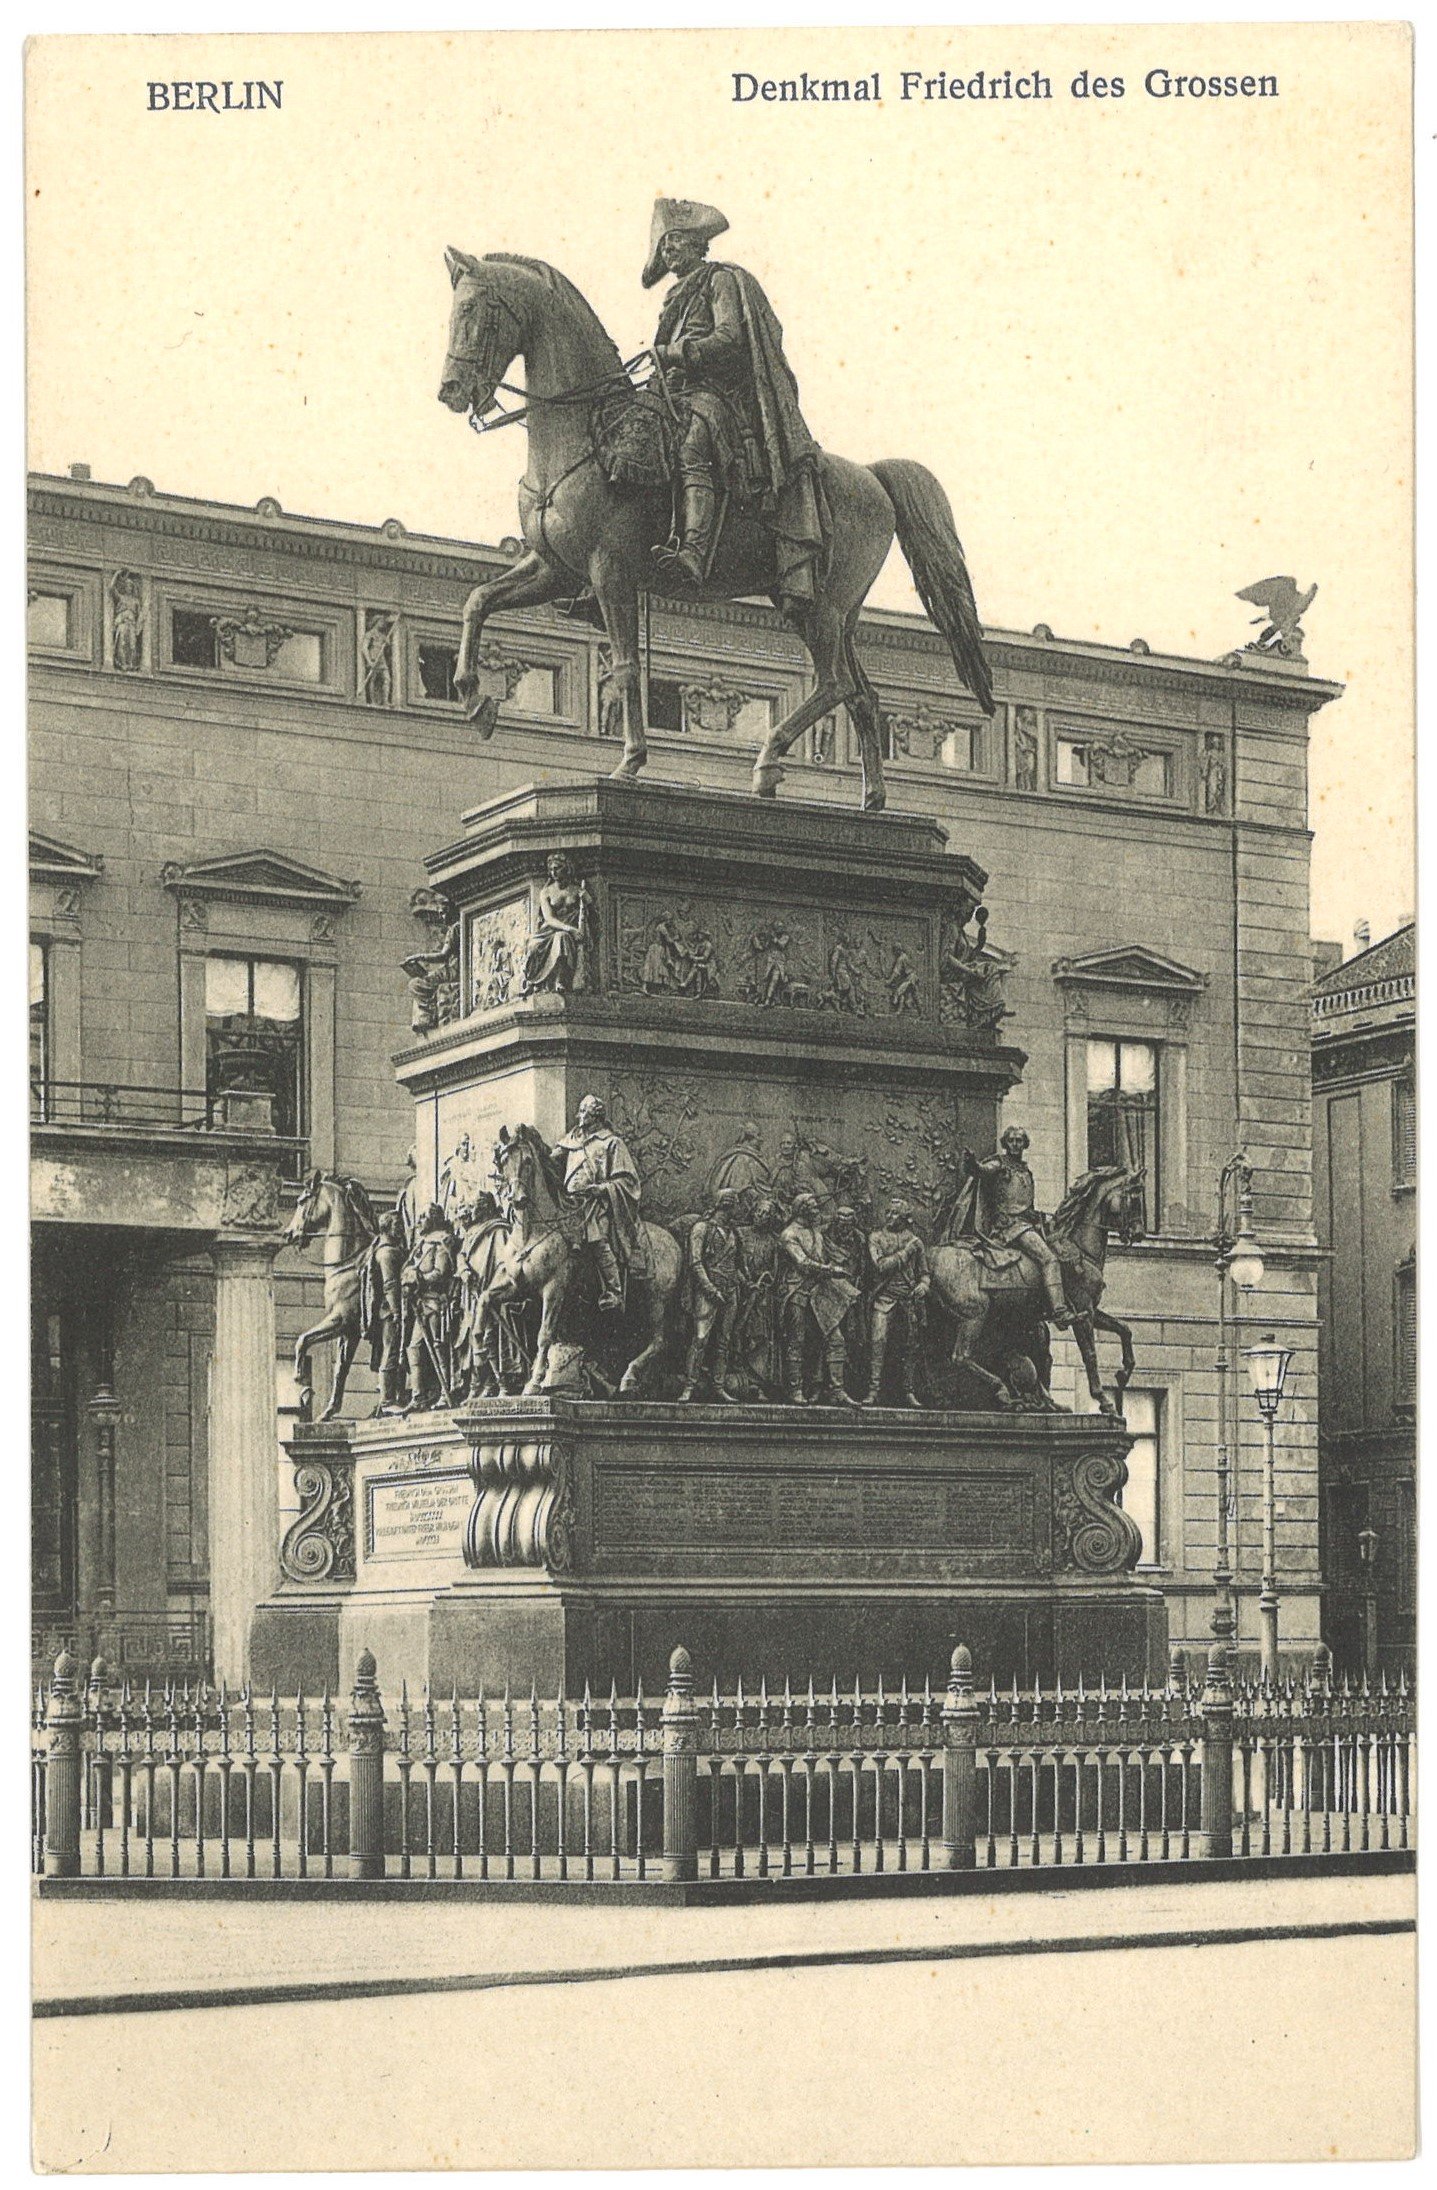 Berlin-Mitte: Reiterstandbild Friedrichs des Großen (Landesgeschichtliche Vereinigung für die Mark Brandenburg e.V. CC BY)